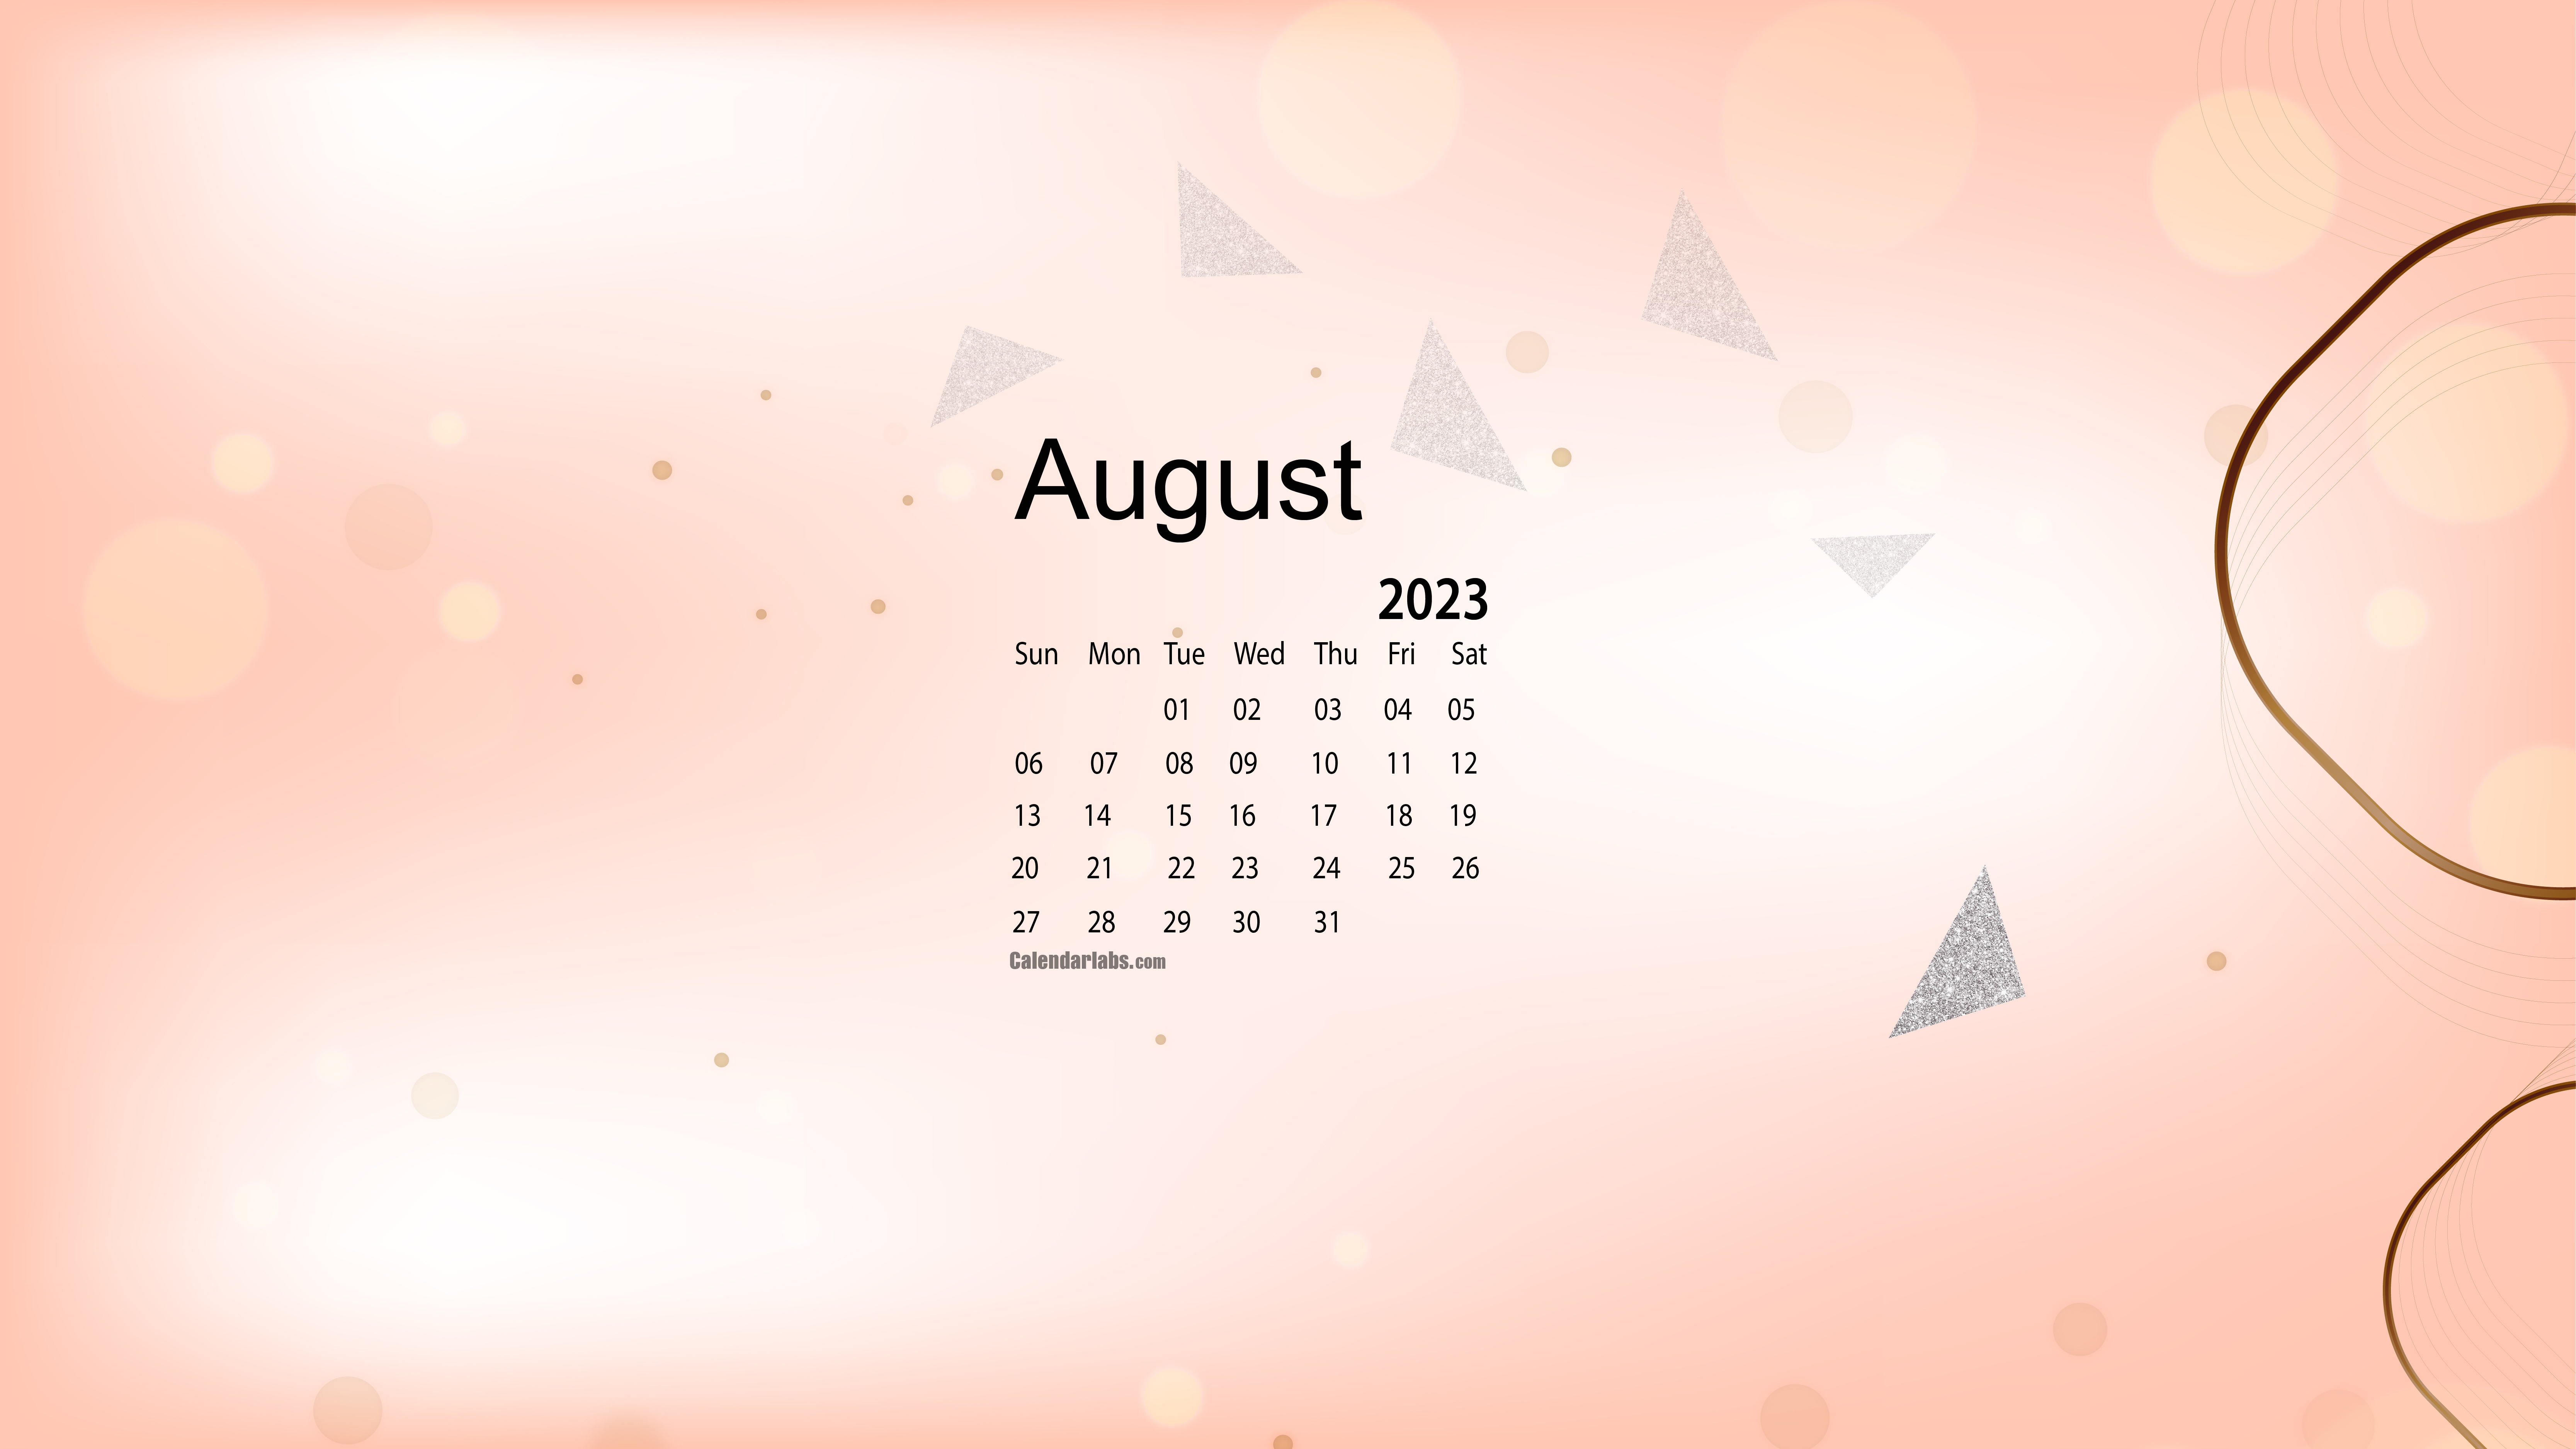 August 2023 Desktop Wallpaper Calendar - CalendarLabs